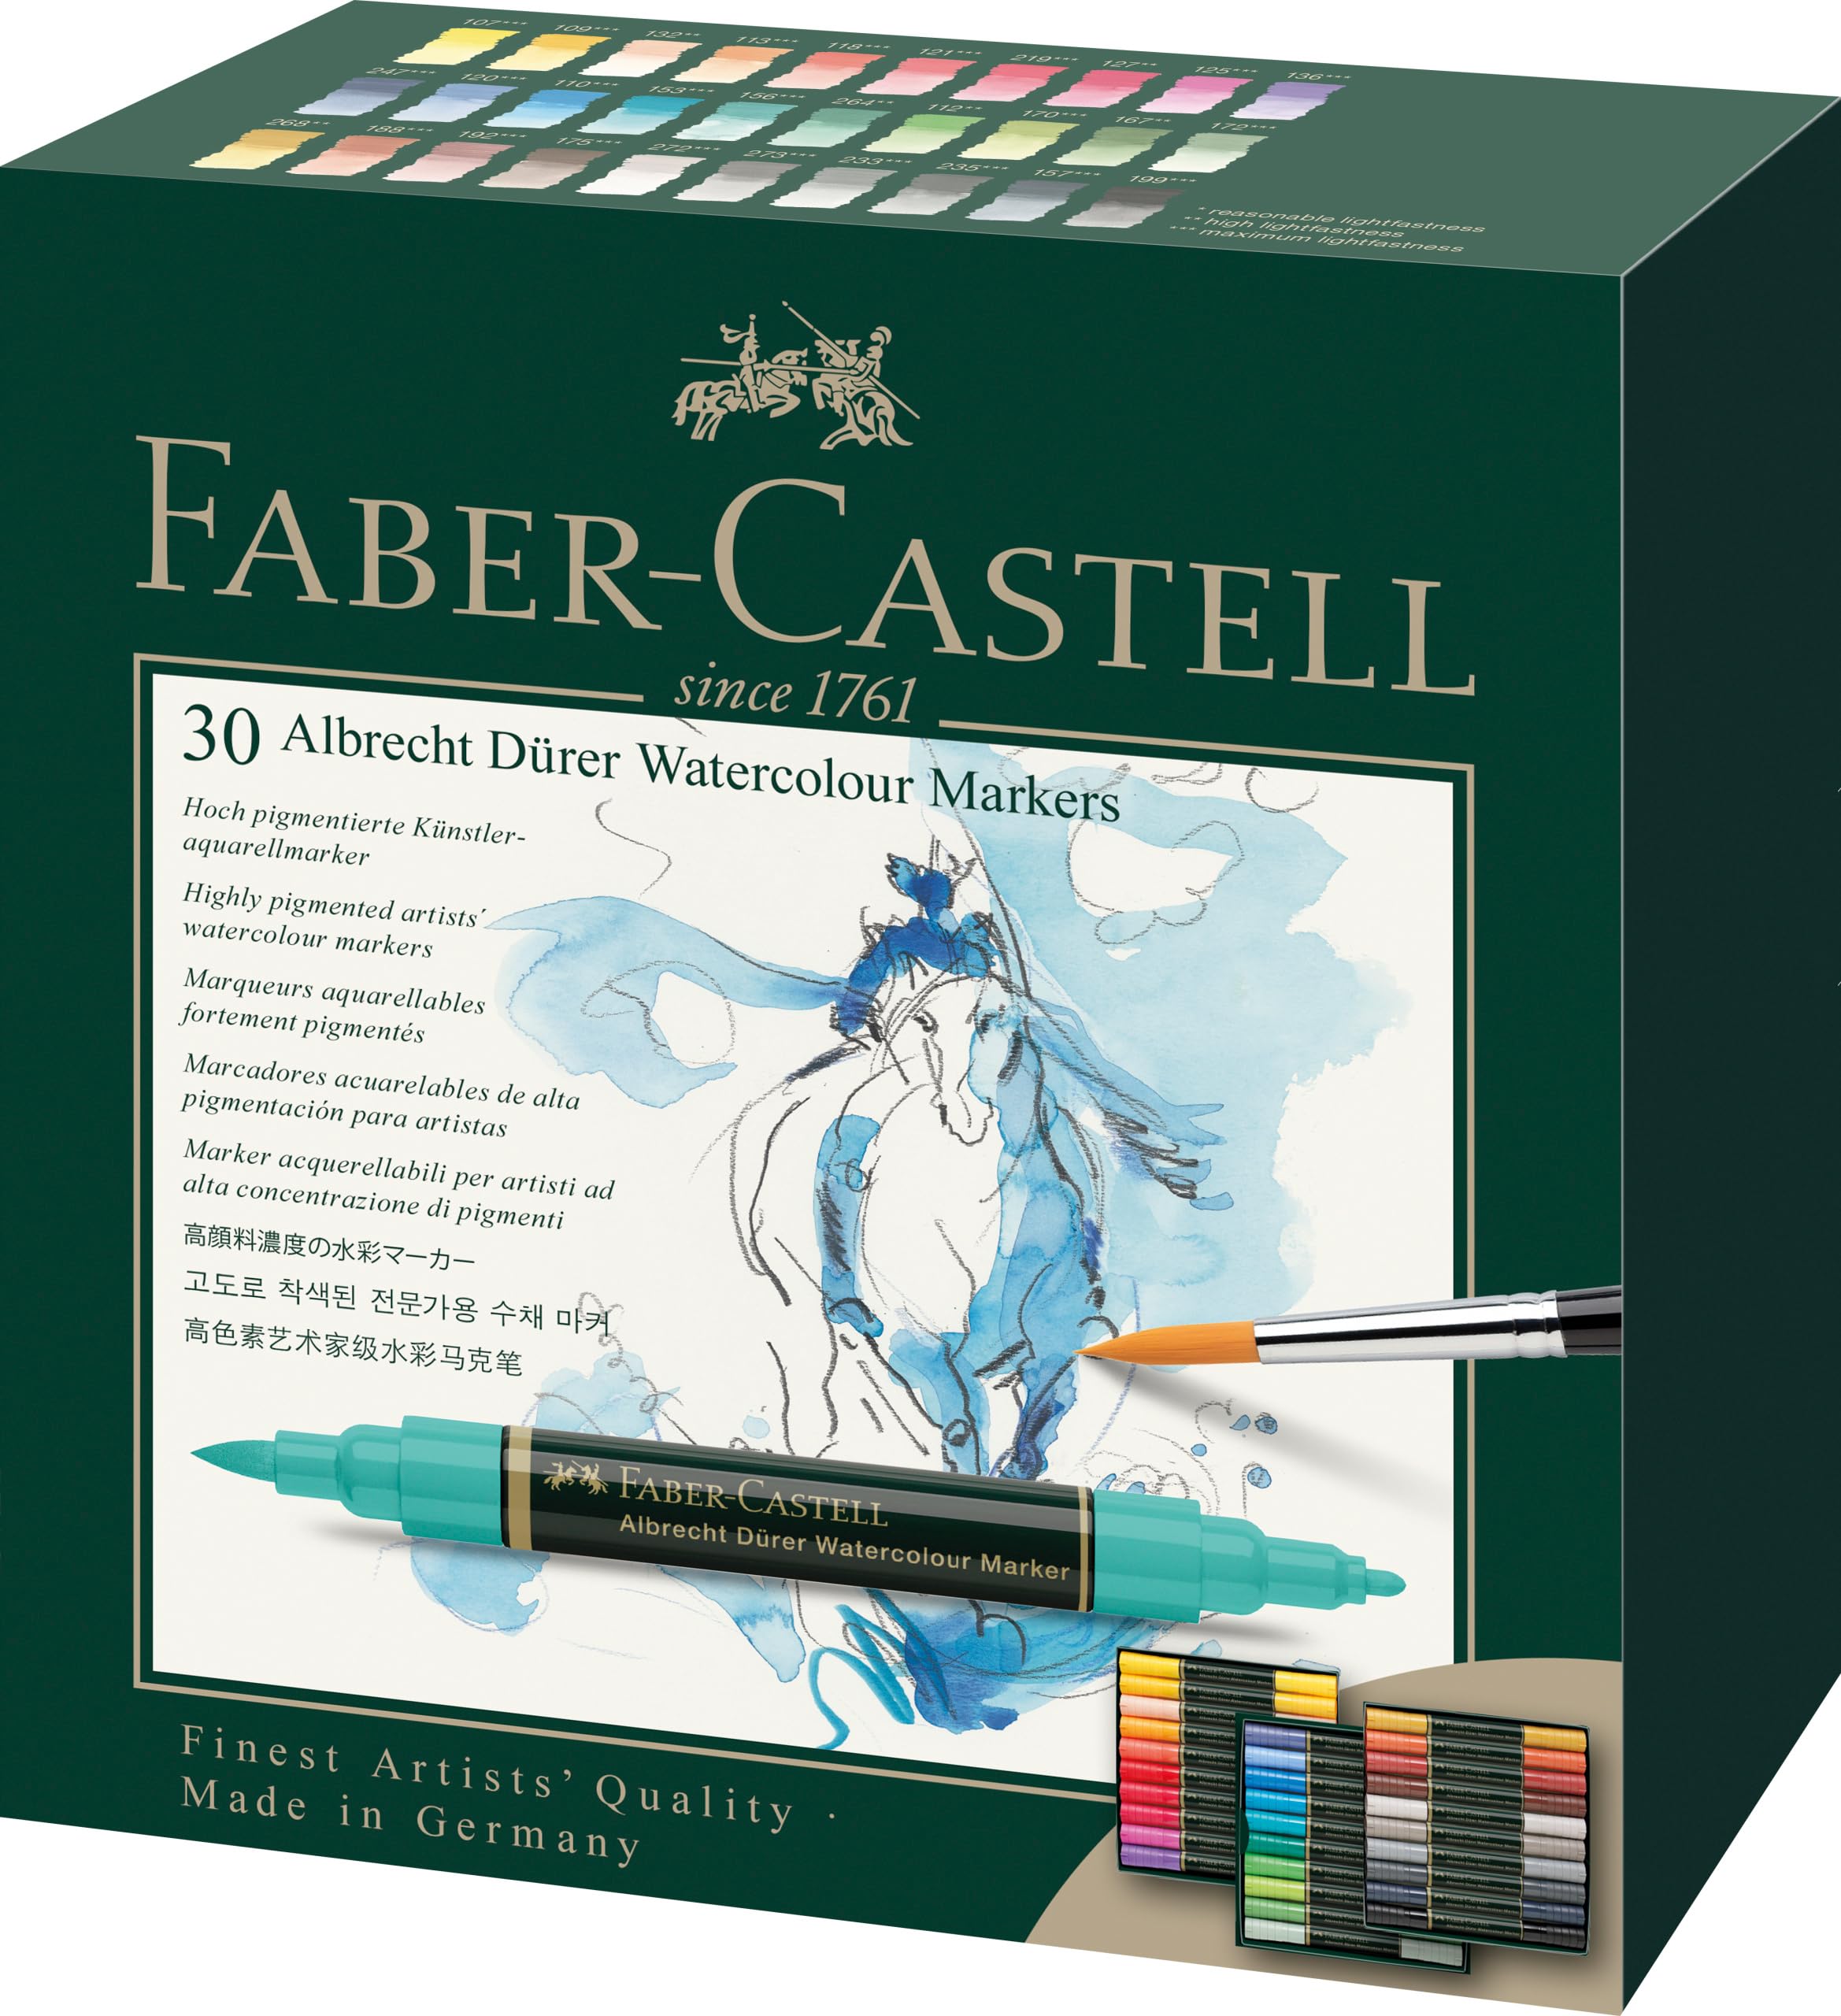 Faber-Castell 160330 Aquarellmarker Albrecht Dürer mit Doppelspitze für flächigen und präzisen Farbauftrag, 30er Etui, bunt